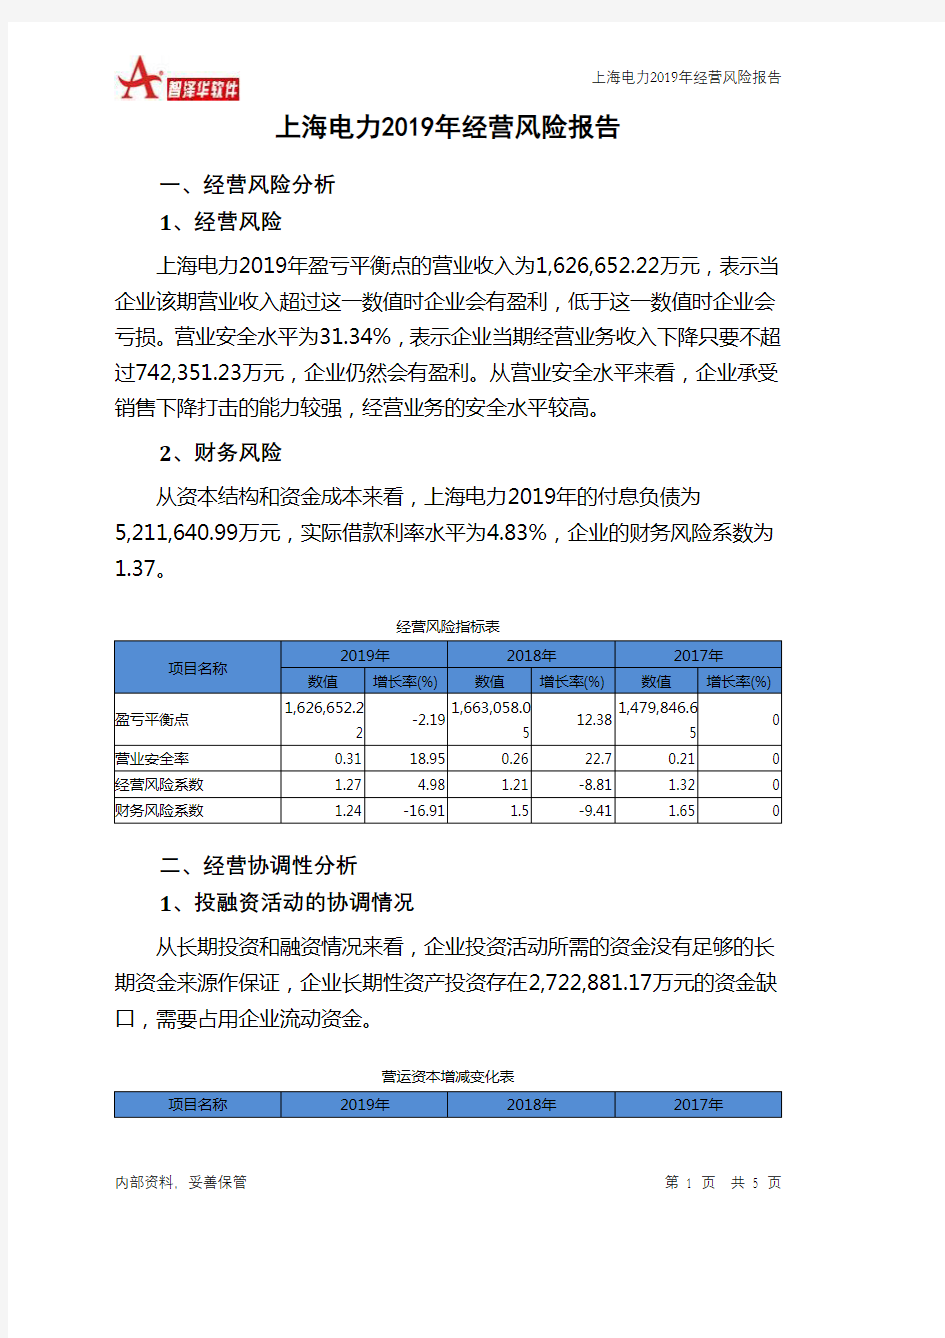 上海电力2019年经营风险报告